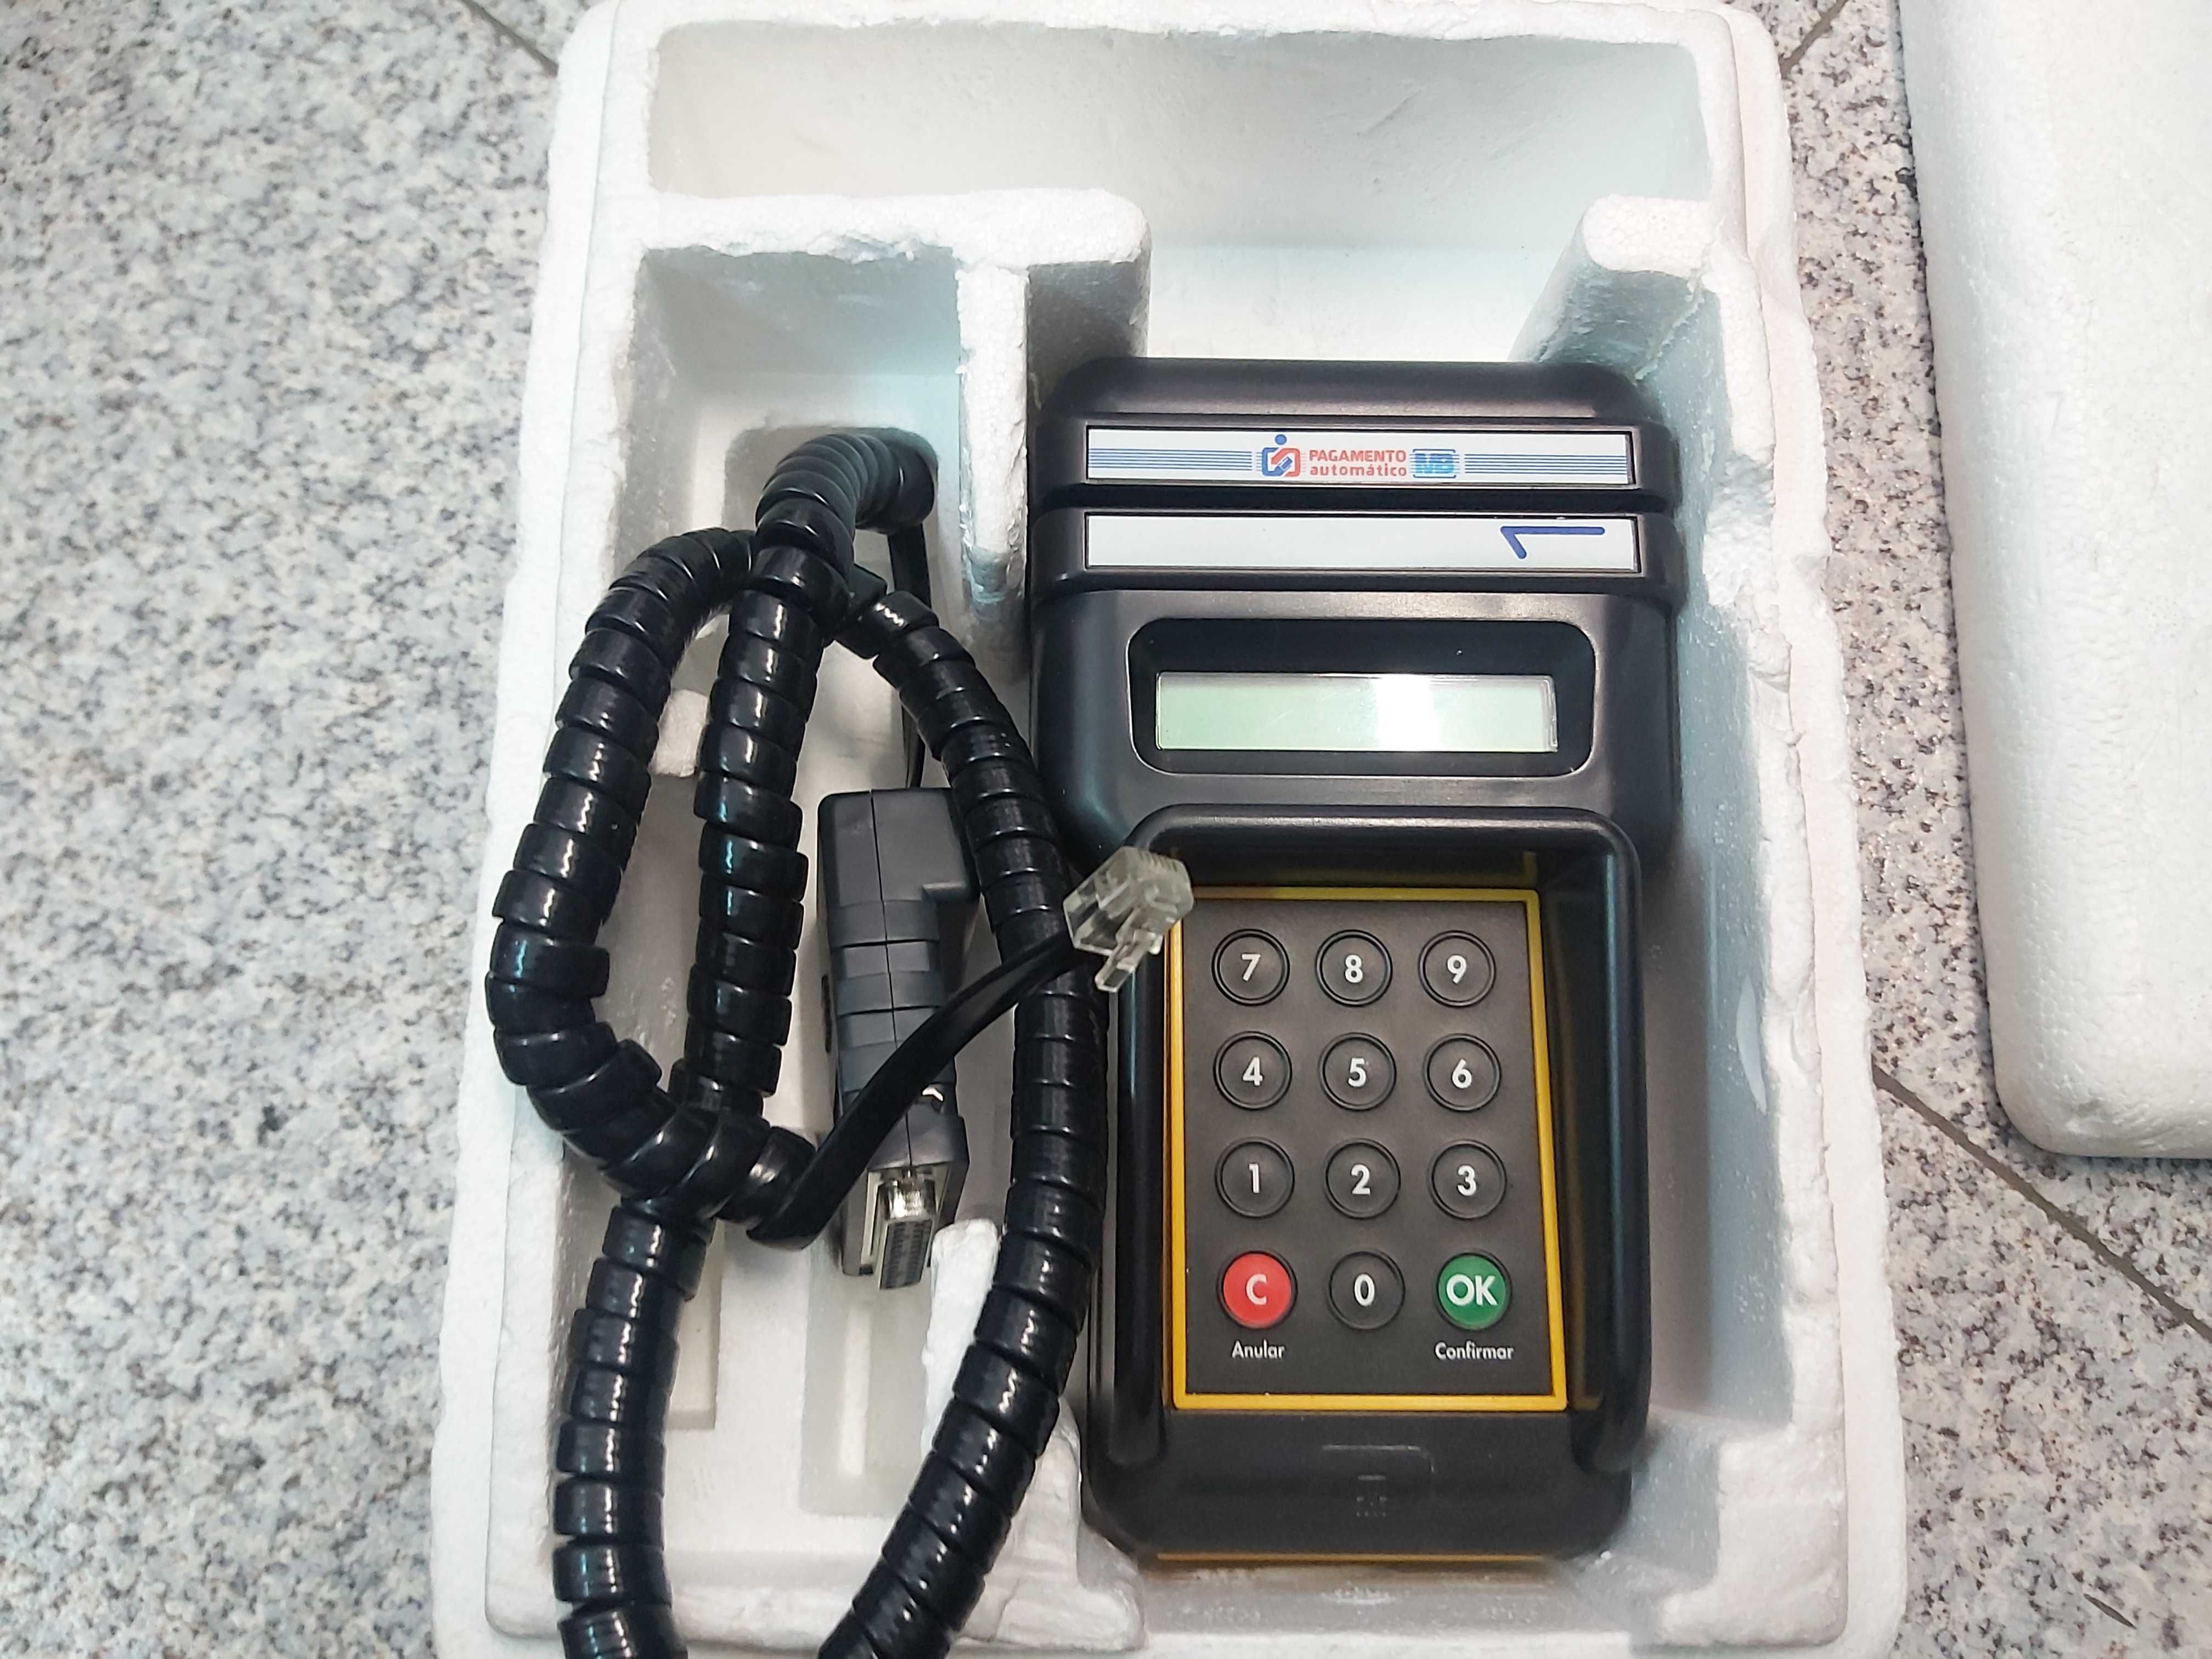 Antigo terminal de pagamento automático Multibanco - TPA